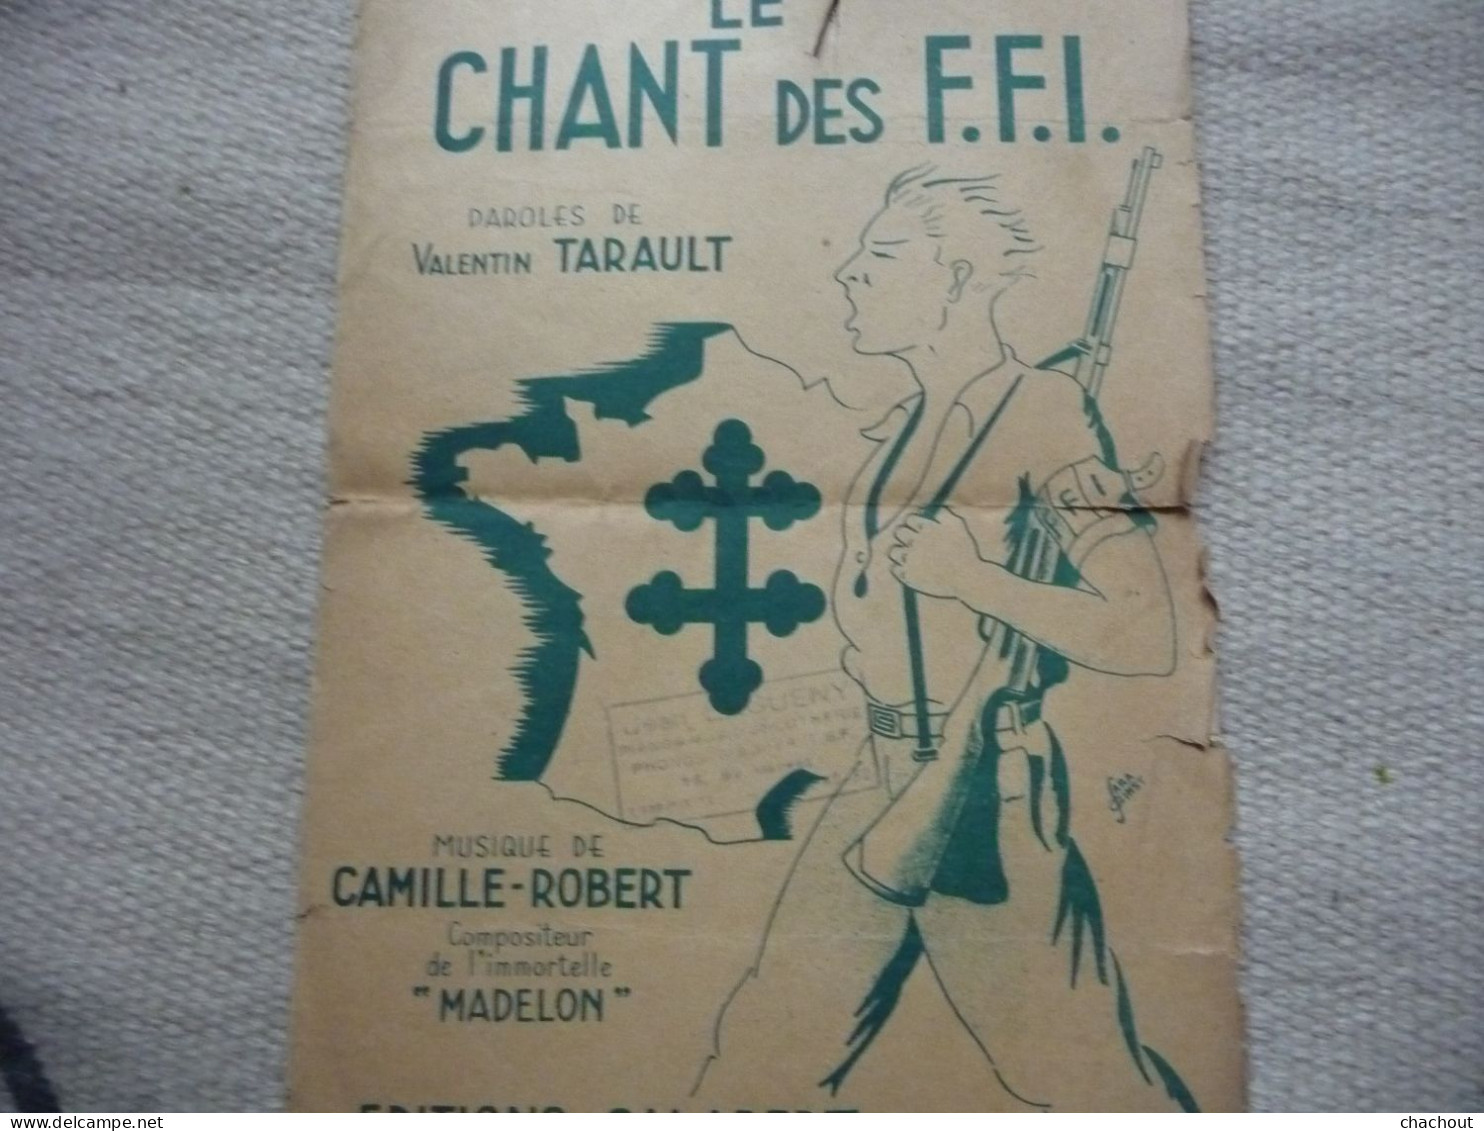 Le Chant Des FFI Paroles De Valentin TARAULT - Documentos